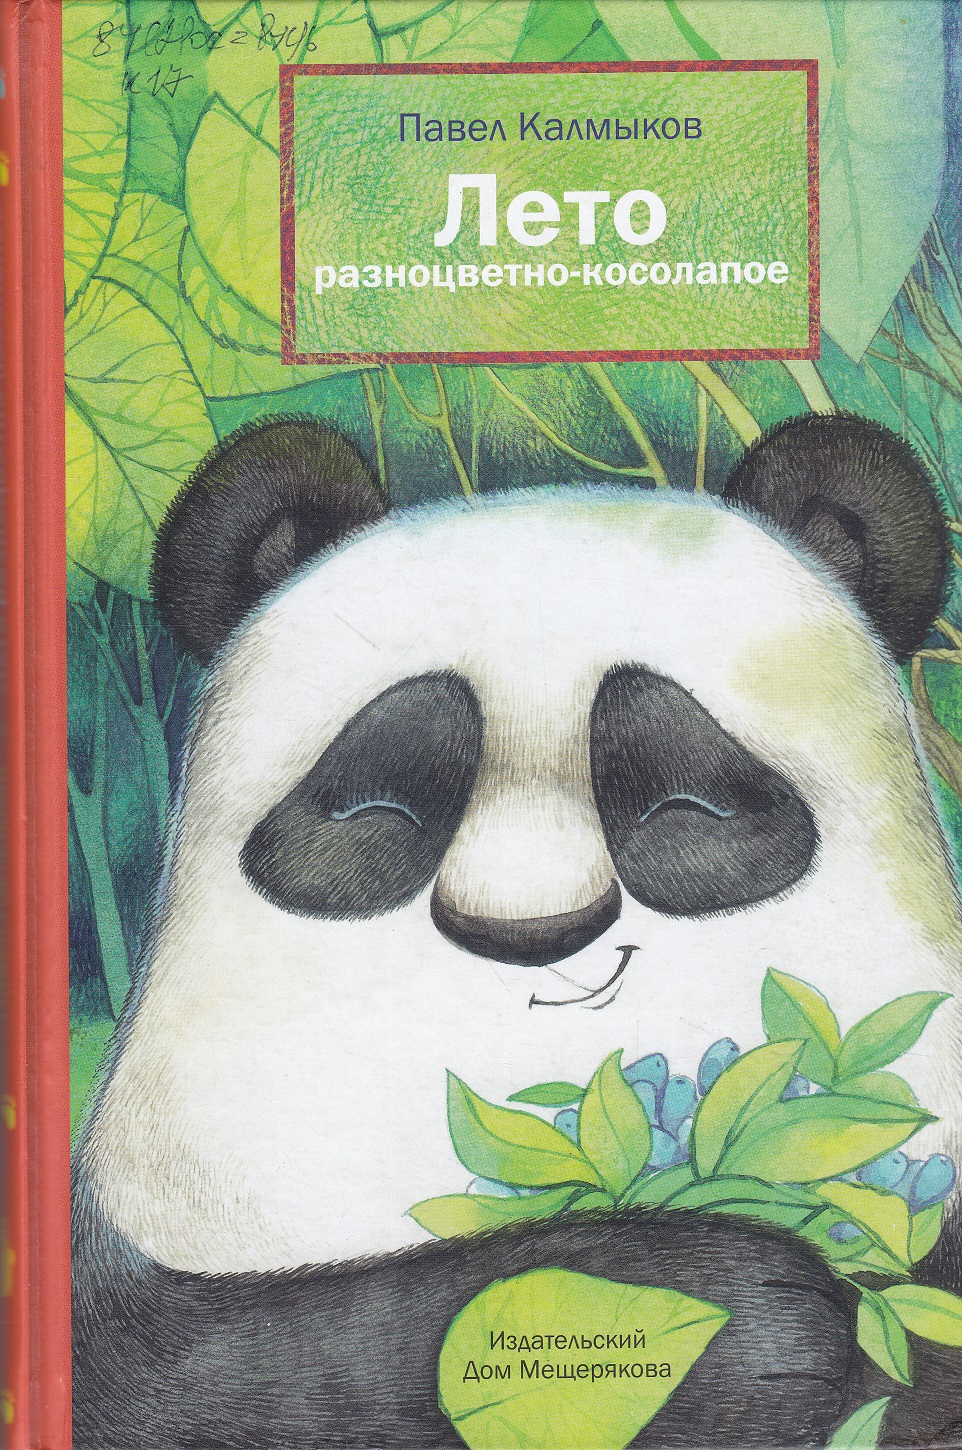 Нажмите для увеличения. Калмыков, П. Л. Лето разноцветно-косолапое (фото книг из фонда библиотеки)